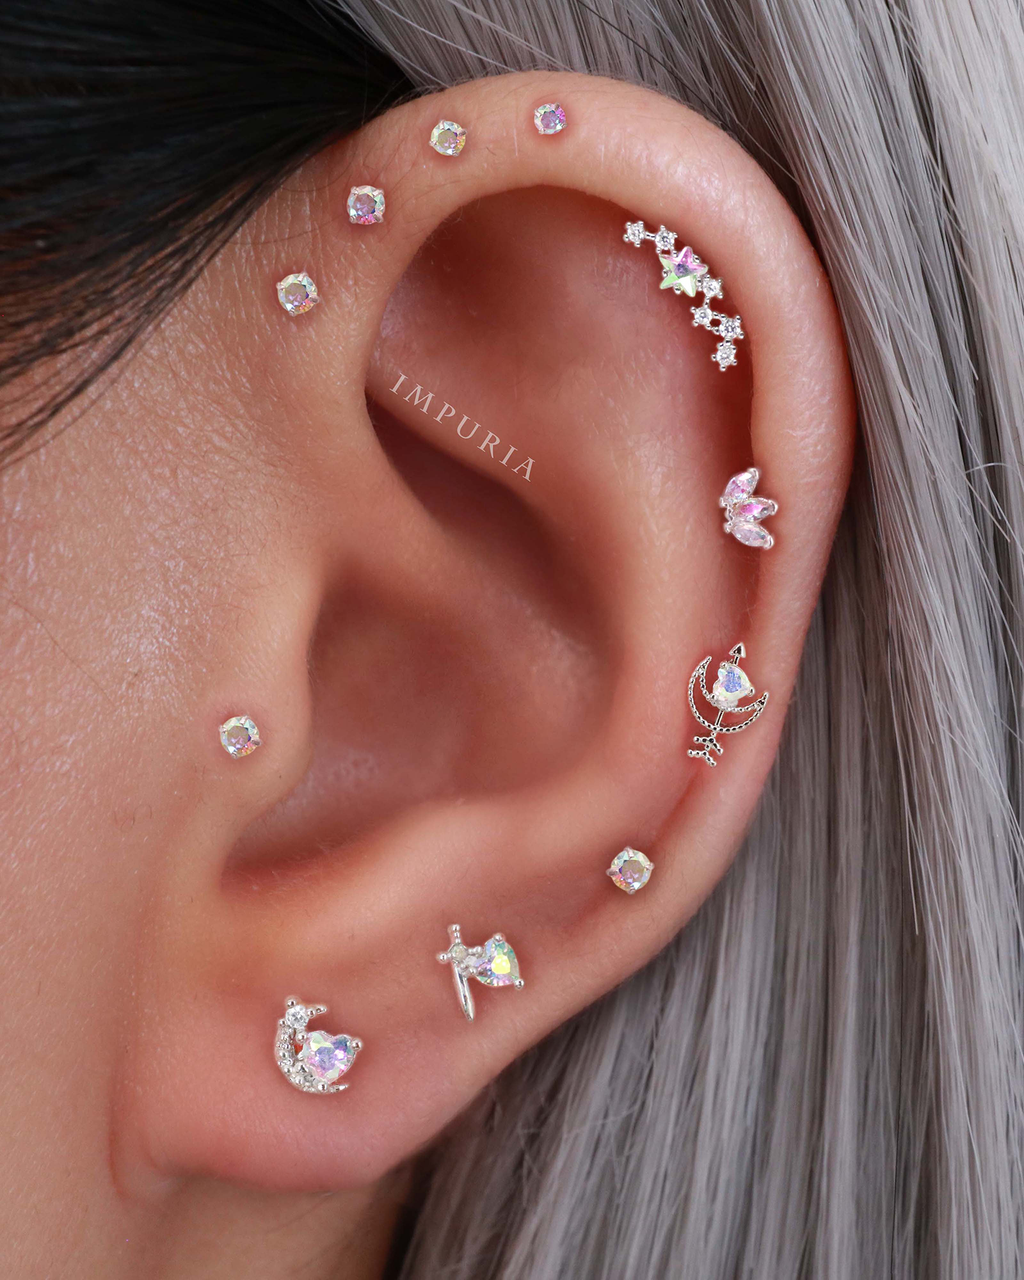 40 of the Best Ear Piercing Ideas for 2022 – Impuria Ear Piercing Jewelry